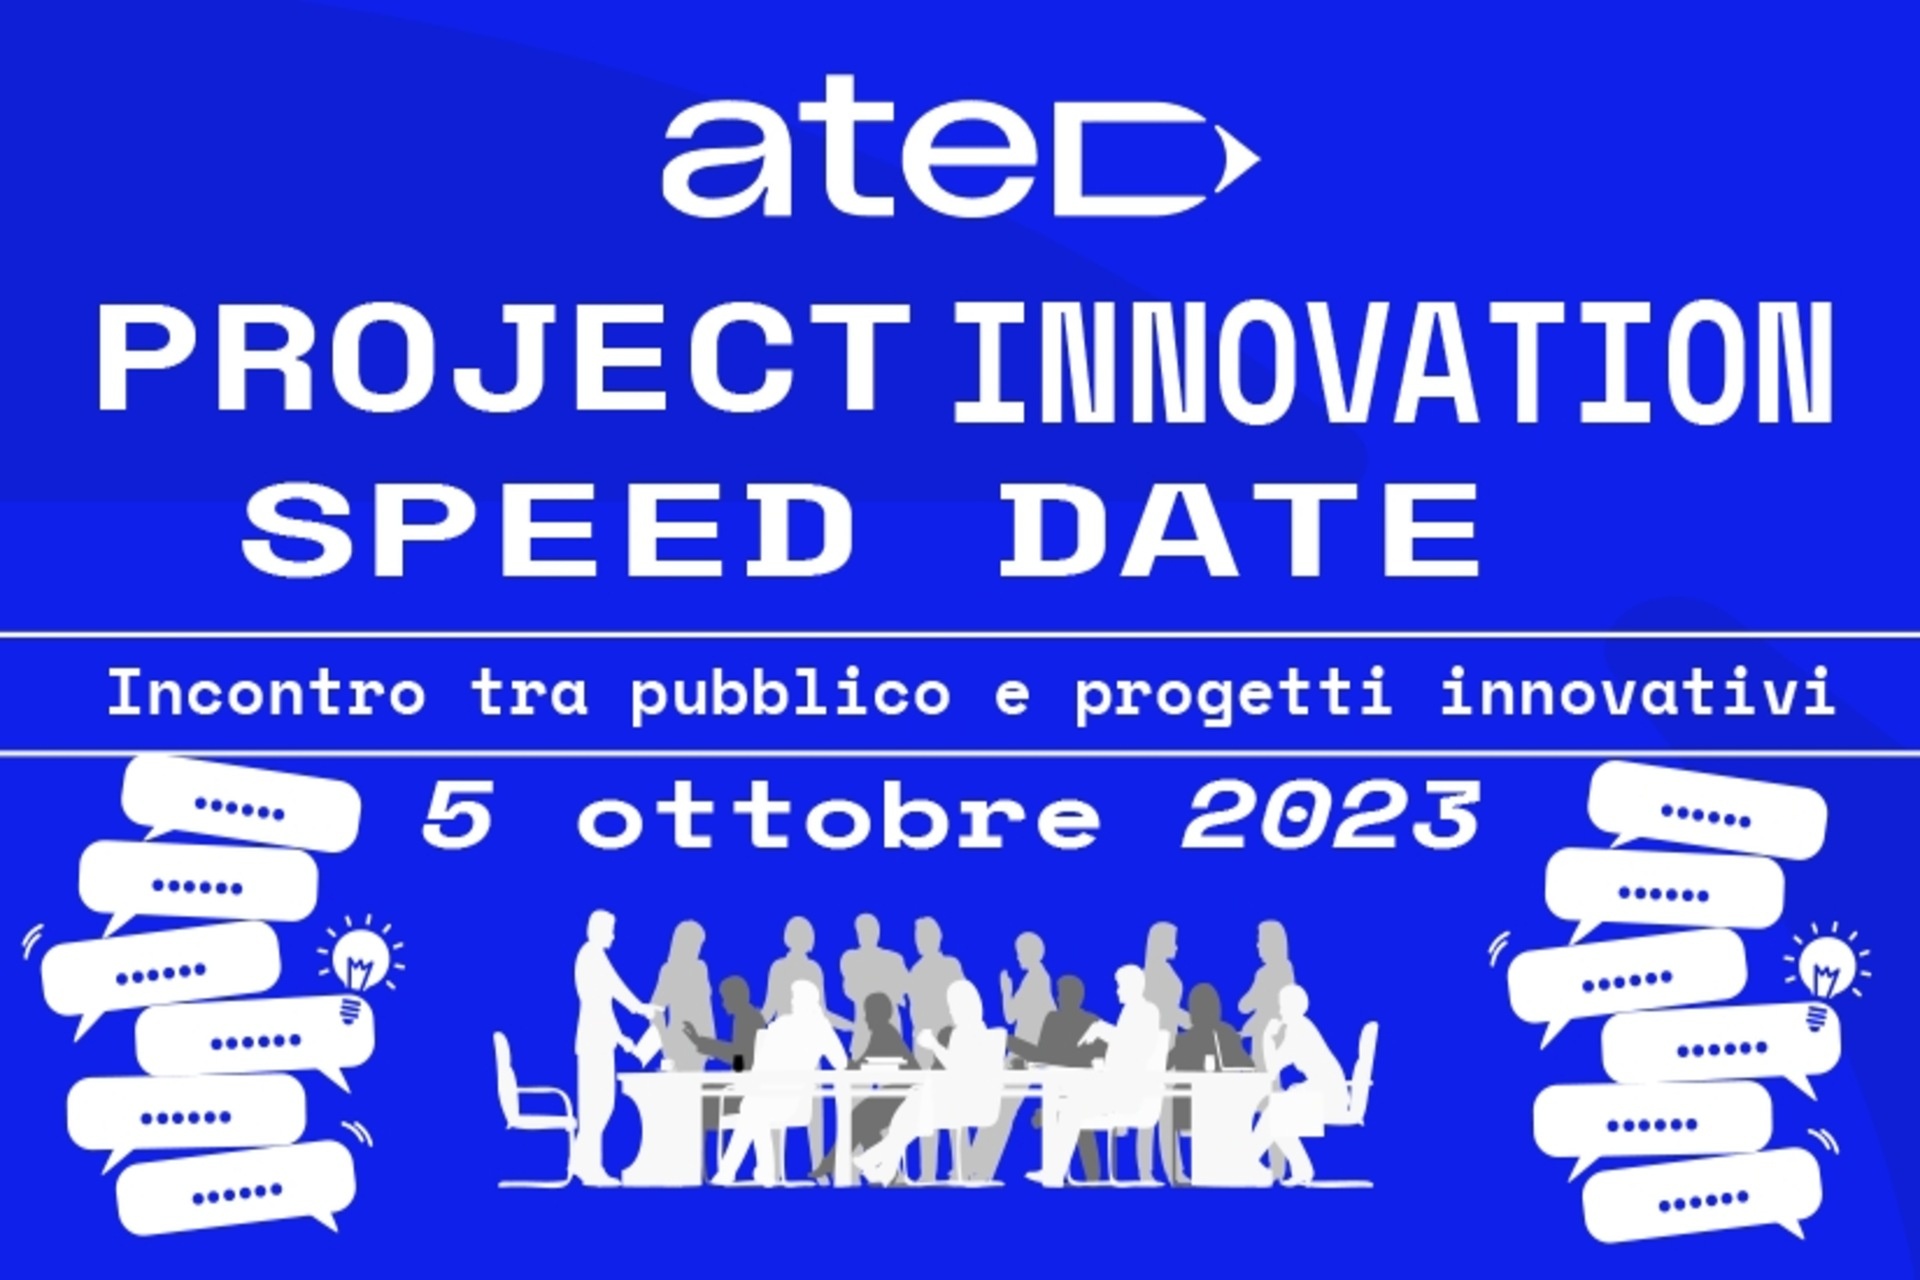 Projekty: plakát projektu ATED Project Innovation Speed ​​​​Date